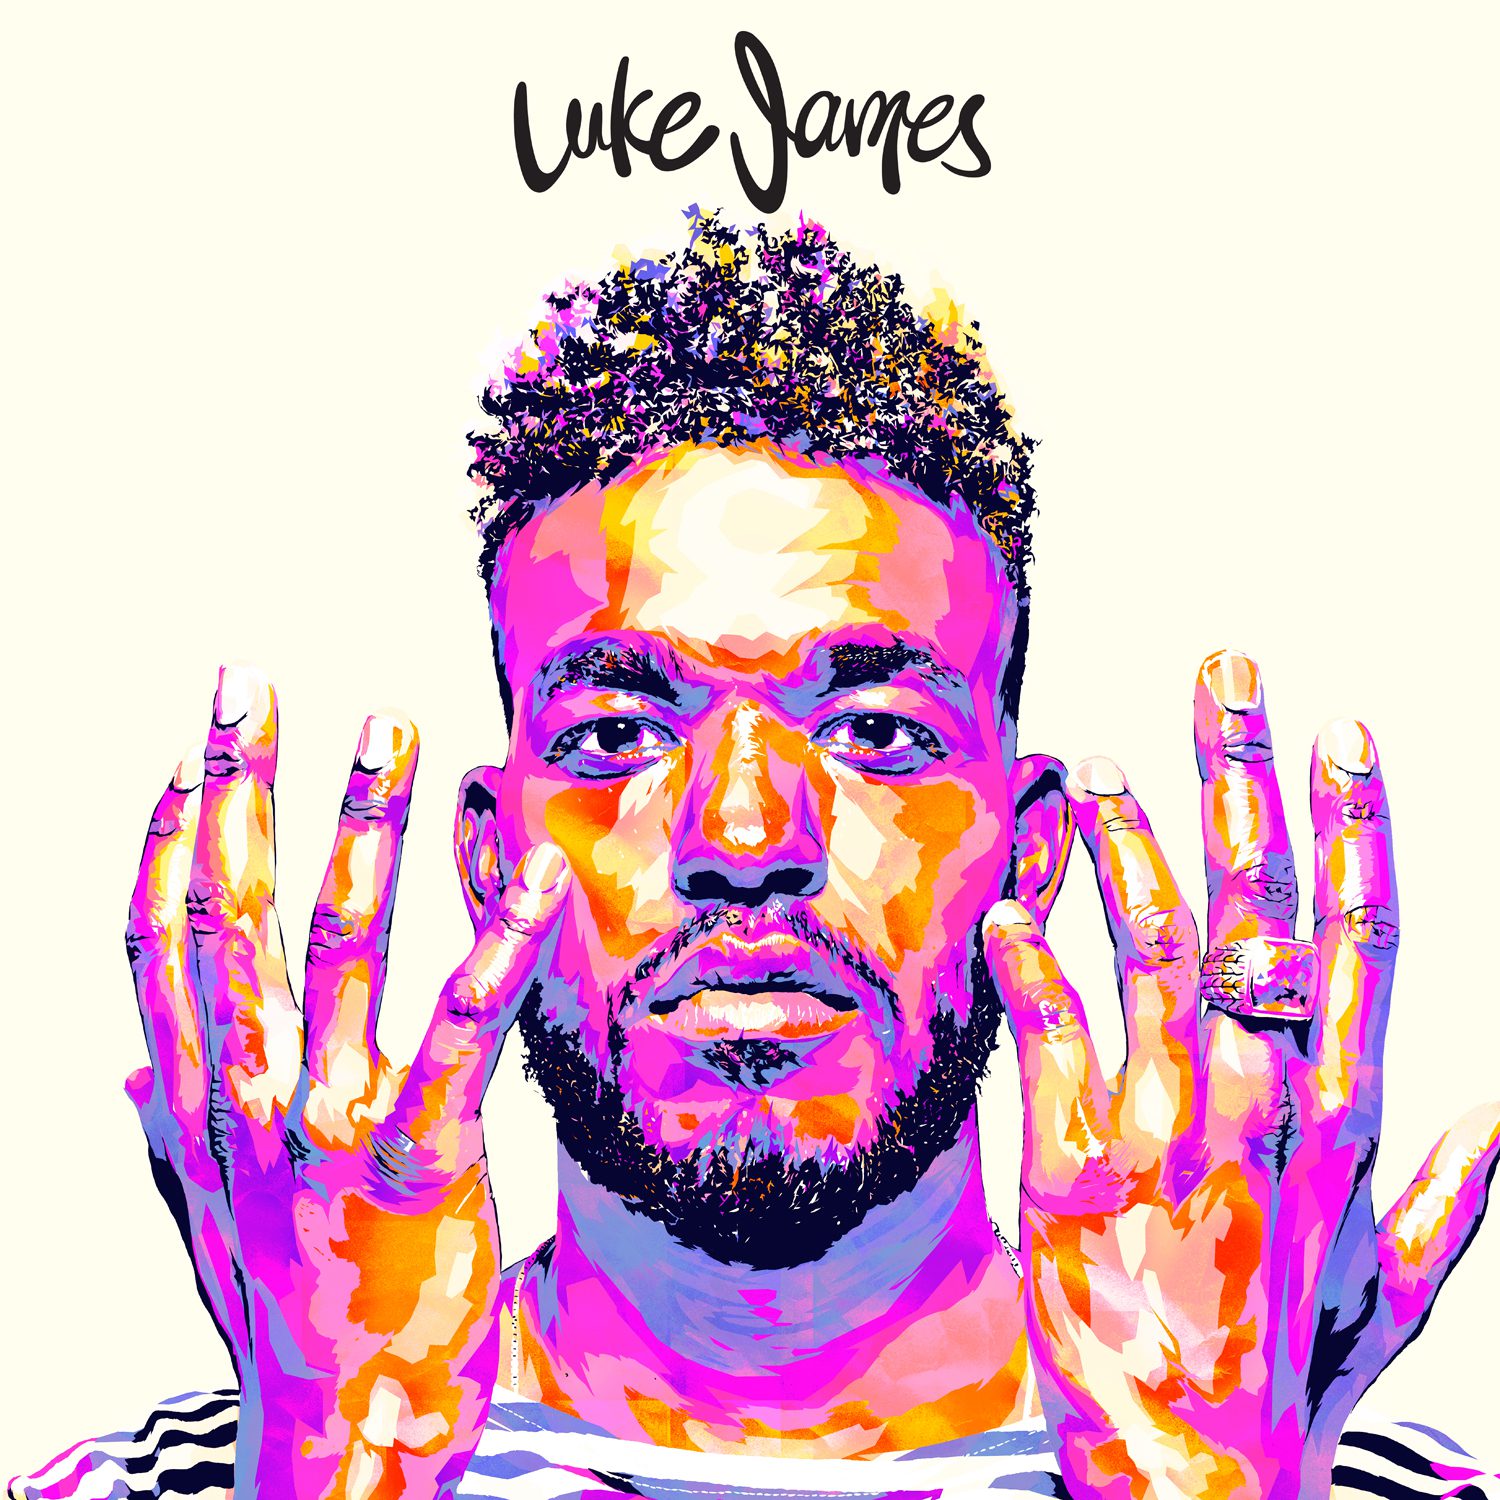 The Full Luke James Album is Here